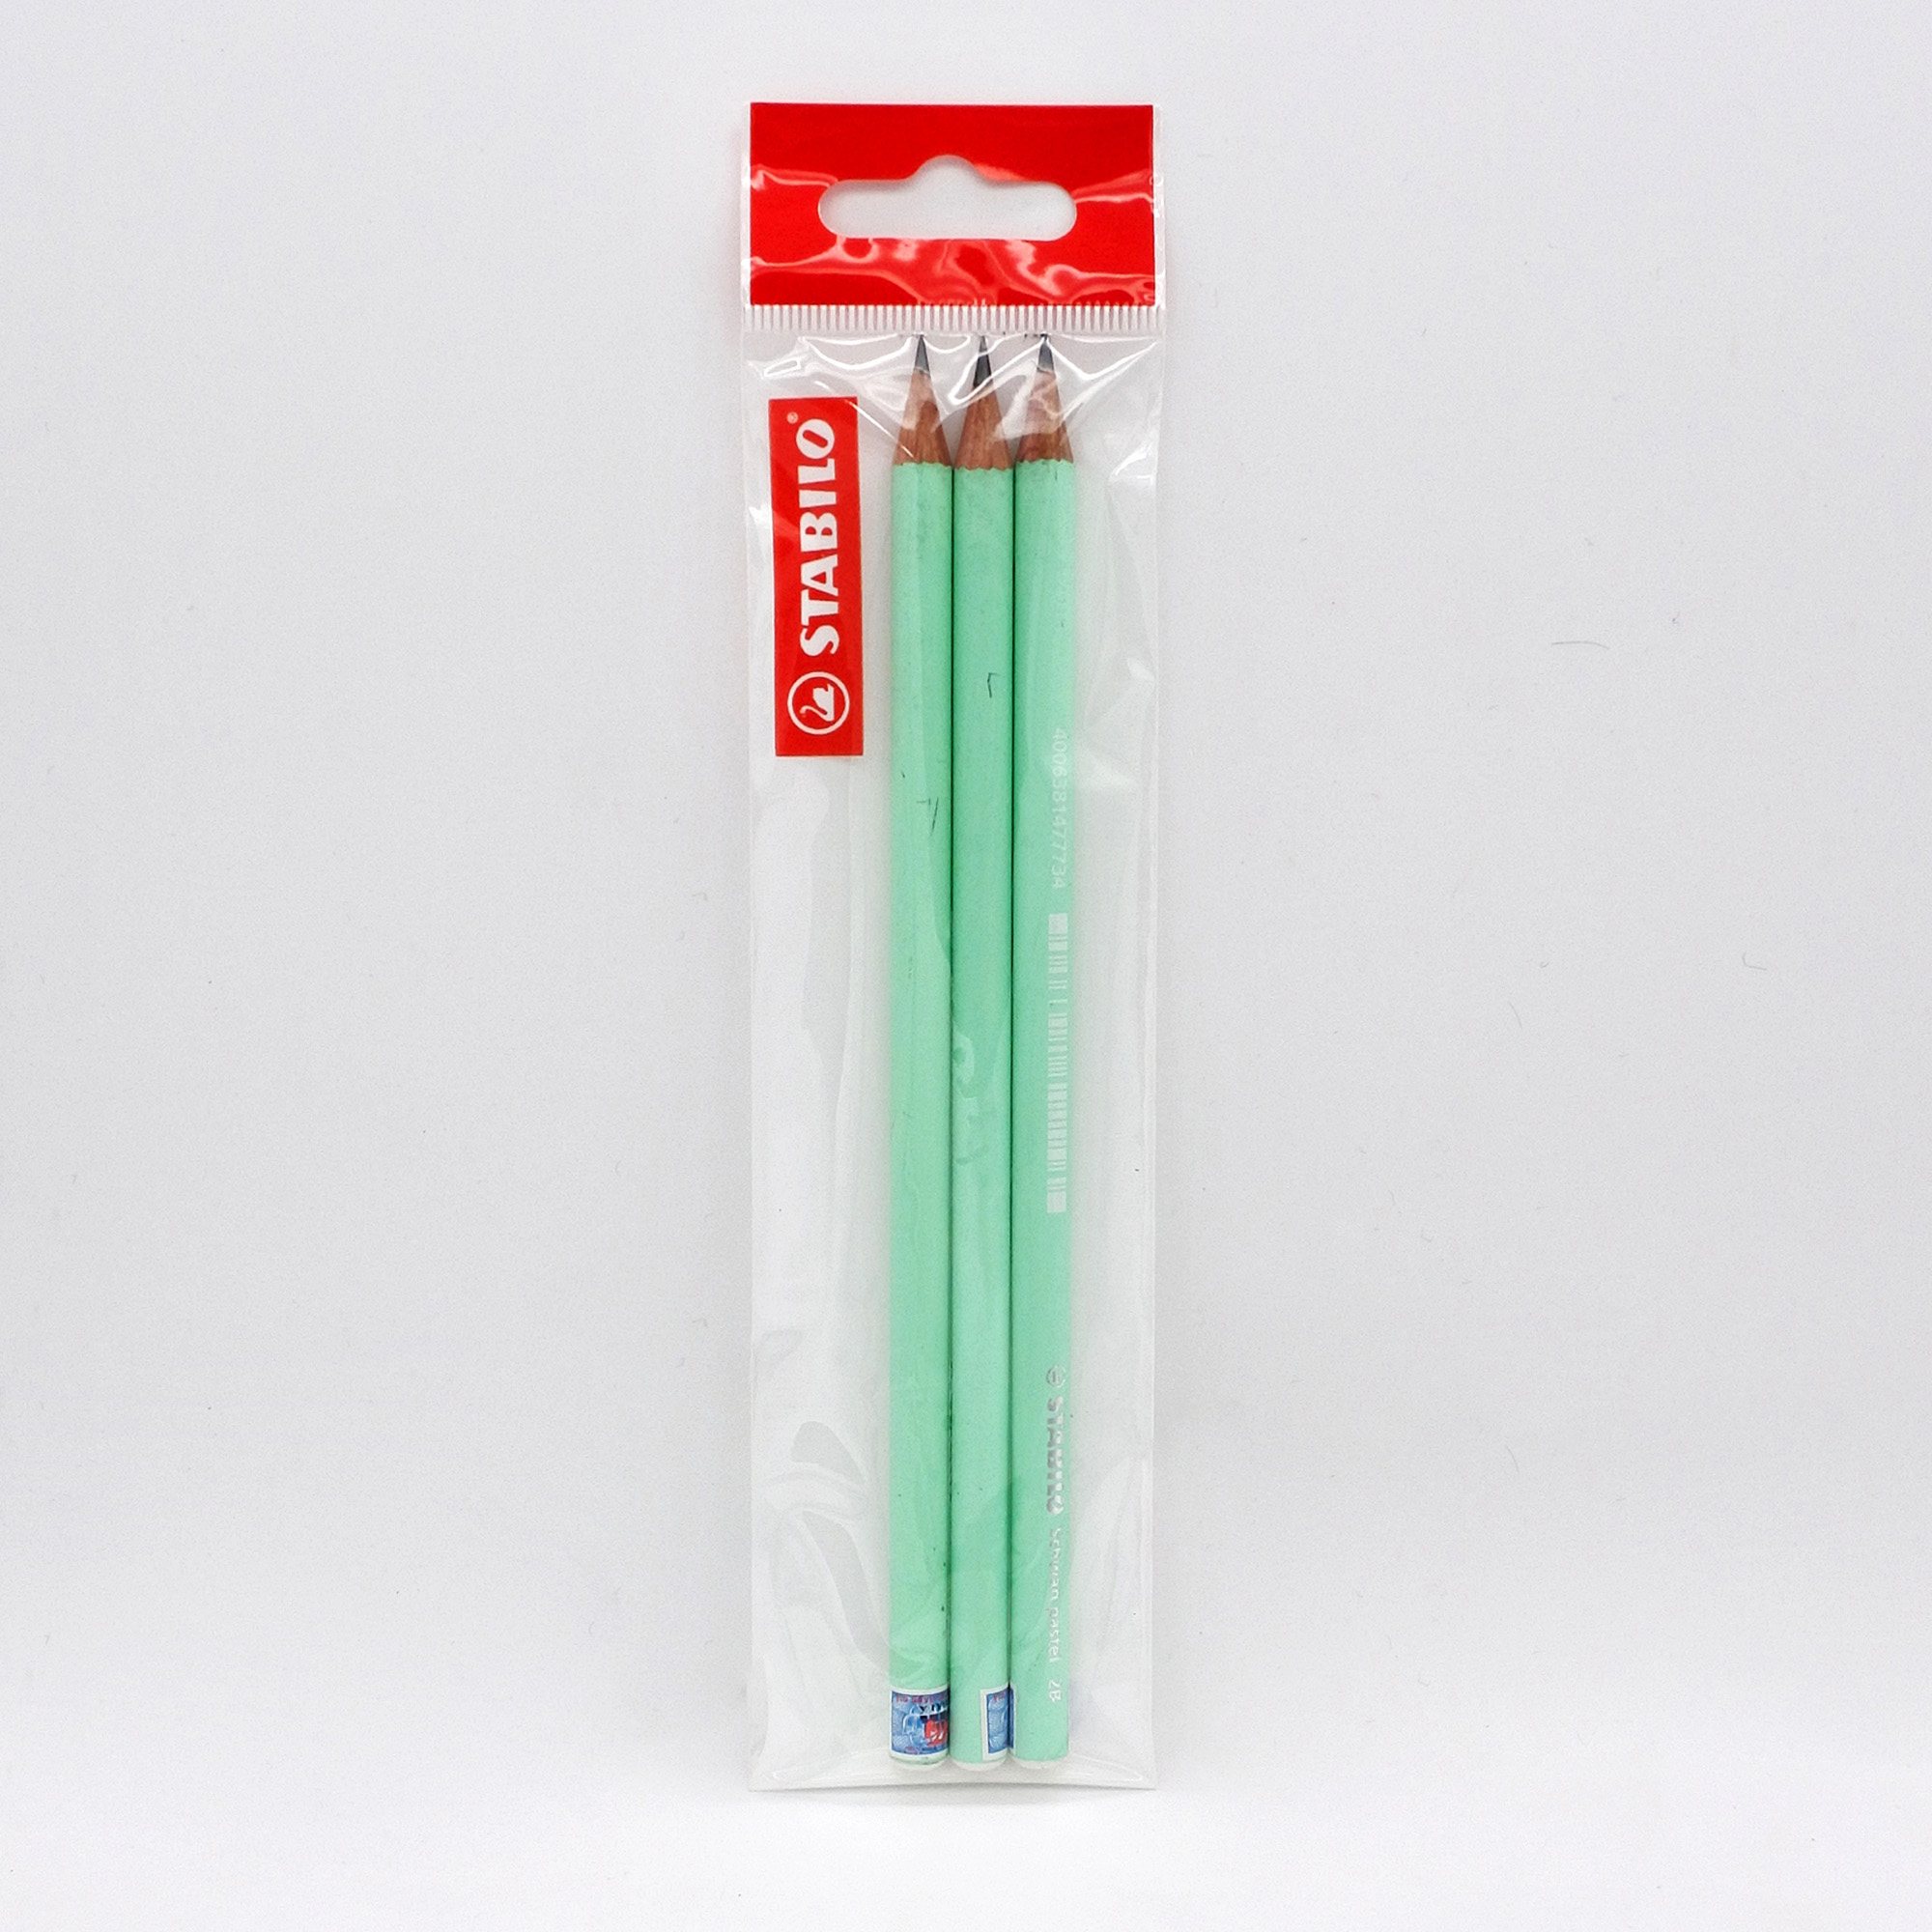 Bộ bút chì gỗ STABILO Schwan pastel 421 2B thân tròn - Bộ 2 bút thân màu xanh + Gôm tẩy  ER193 + Chuốt chì PS4538 (PC421U-C2S+)